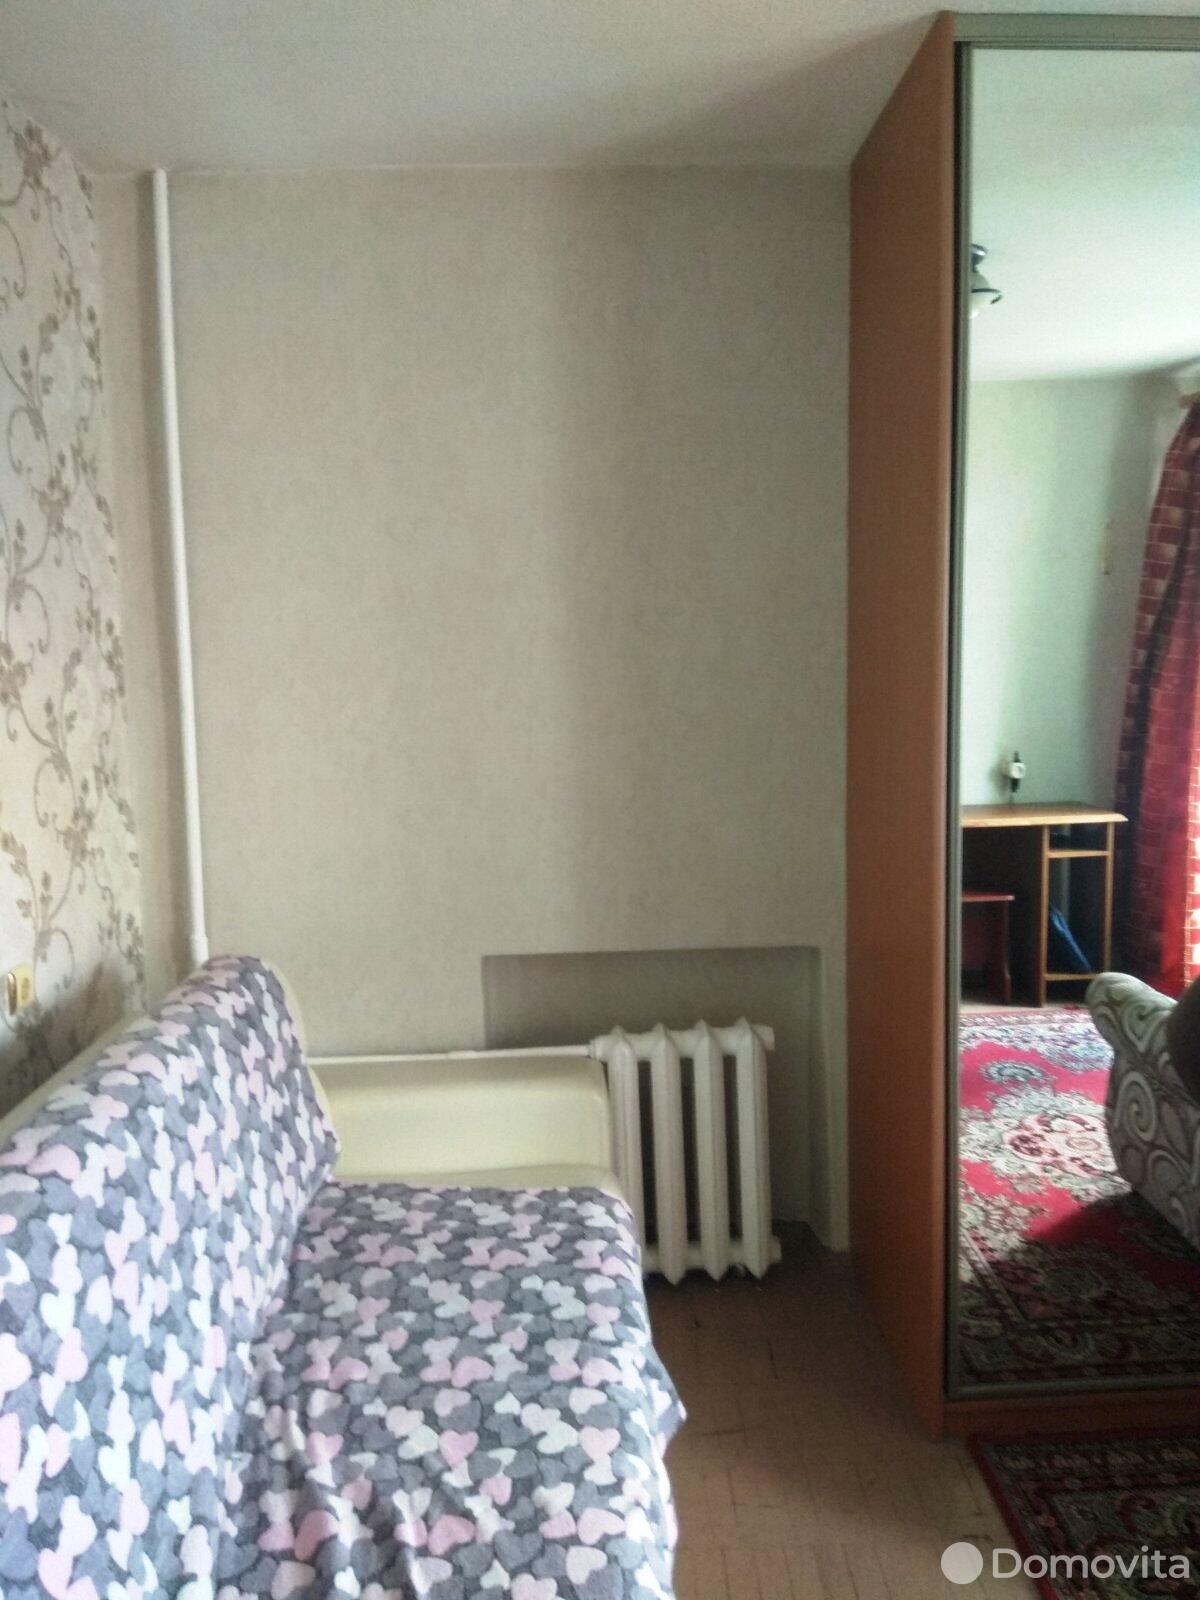 Купить комнату в Минске, ул. Короля, д. 38/1, цена 28000 USD - фото 3